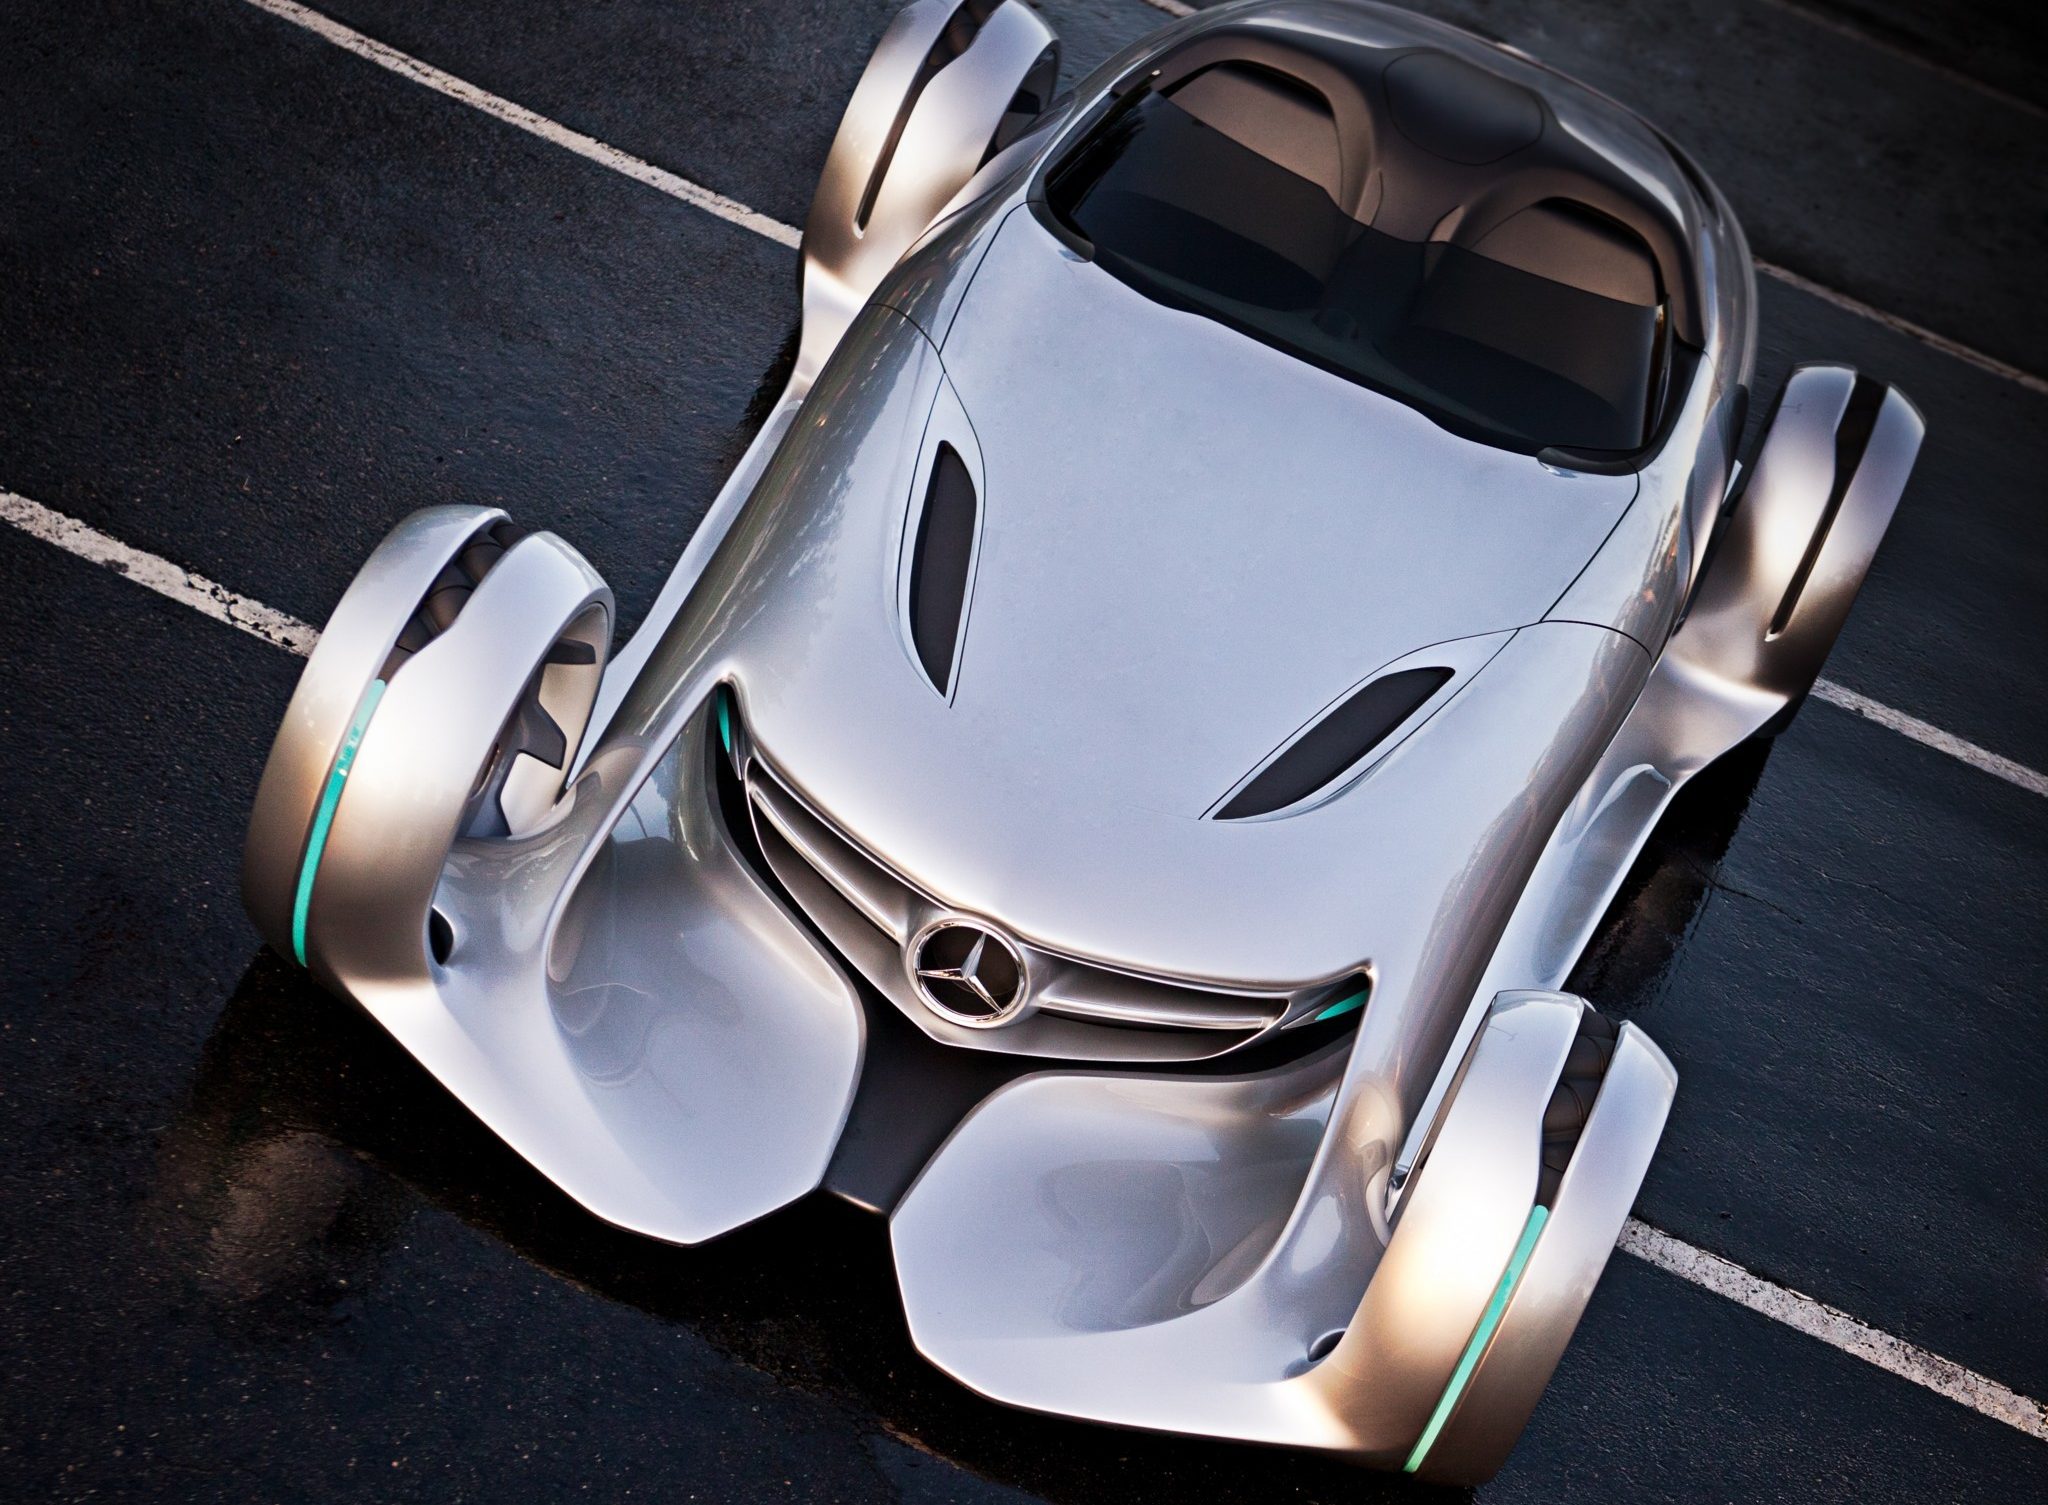 2012 Mercedes-Benz Silver Arrow Concept Wallpapers – 